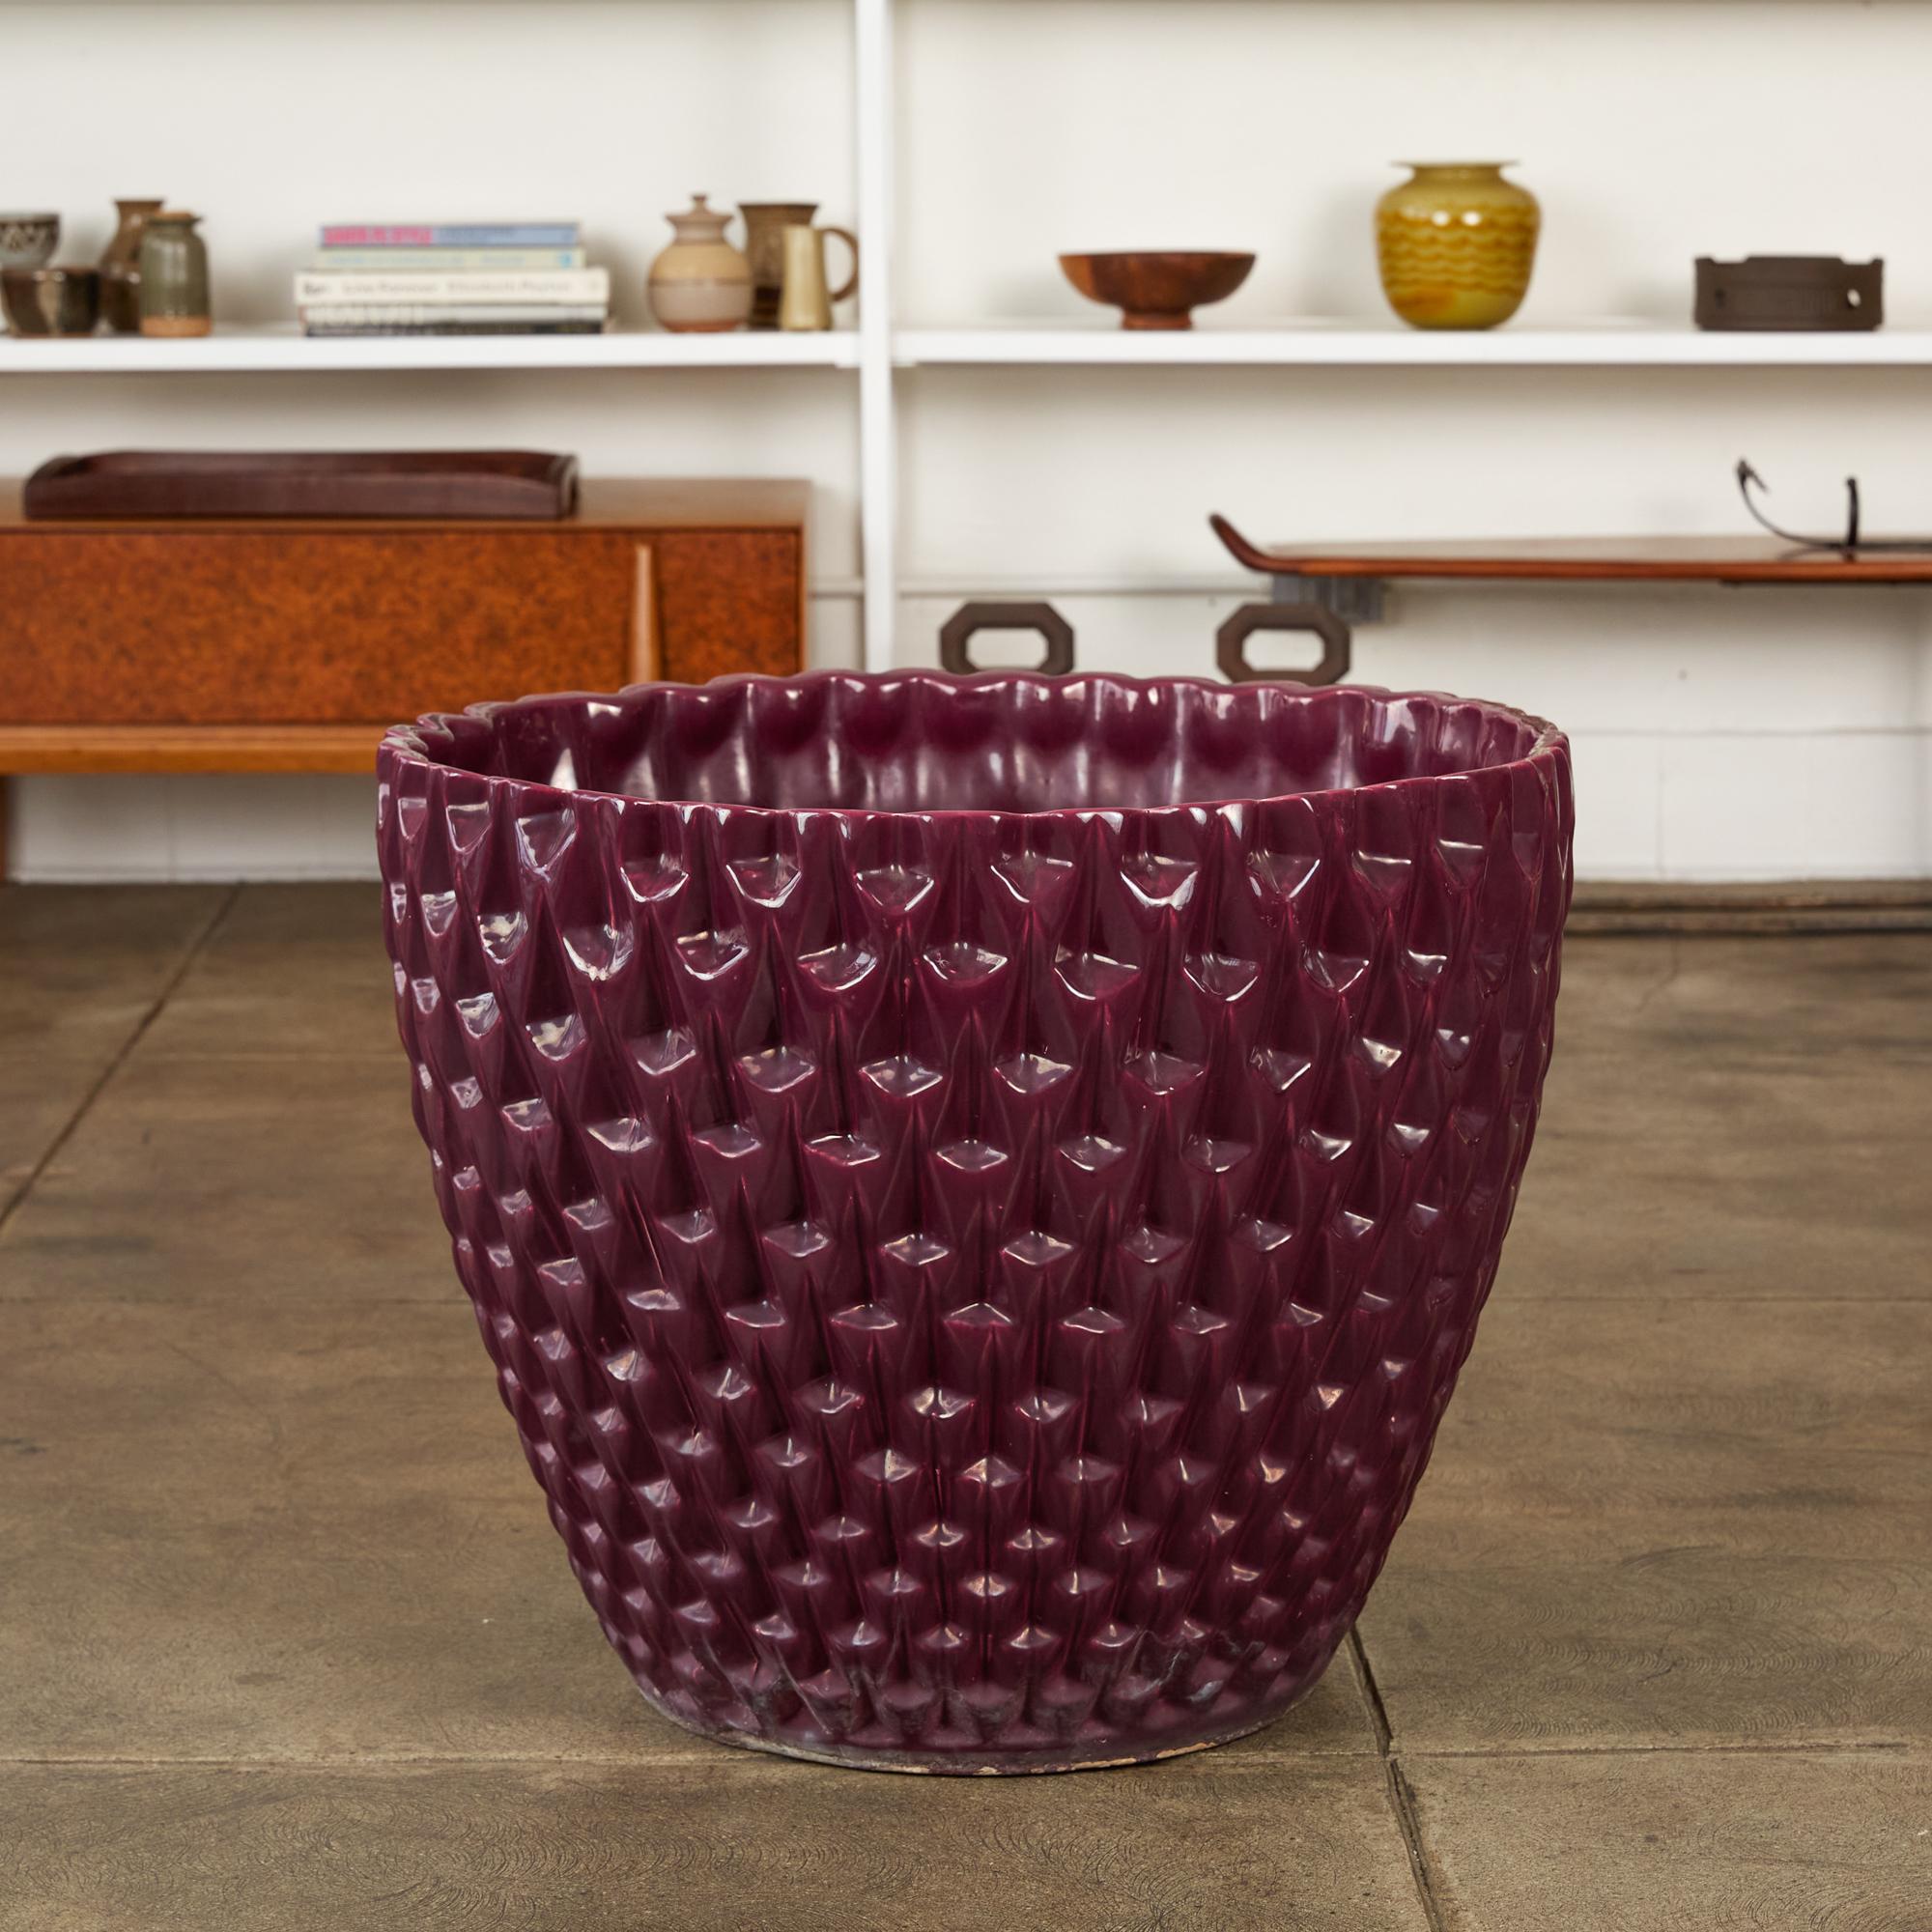 Das 1963 von David Cressey als Teil der Pro/Artisan-Steinzeugkollektion für Architectural Pottery entworfene Pflanzgefäß Phoenix hat die Form einer Schale mit einem geometrischen Relief. Dieses Exemplar hat eine auberginefarbene, violette Glasur mit